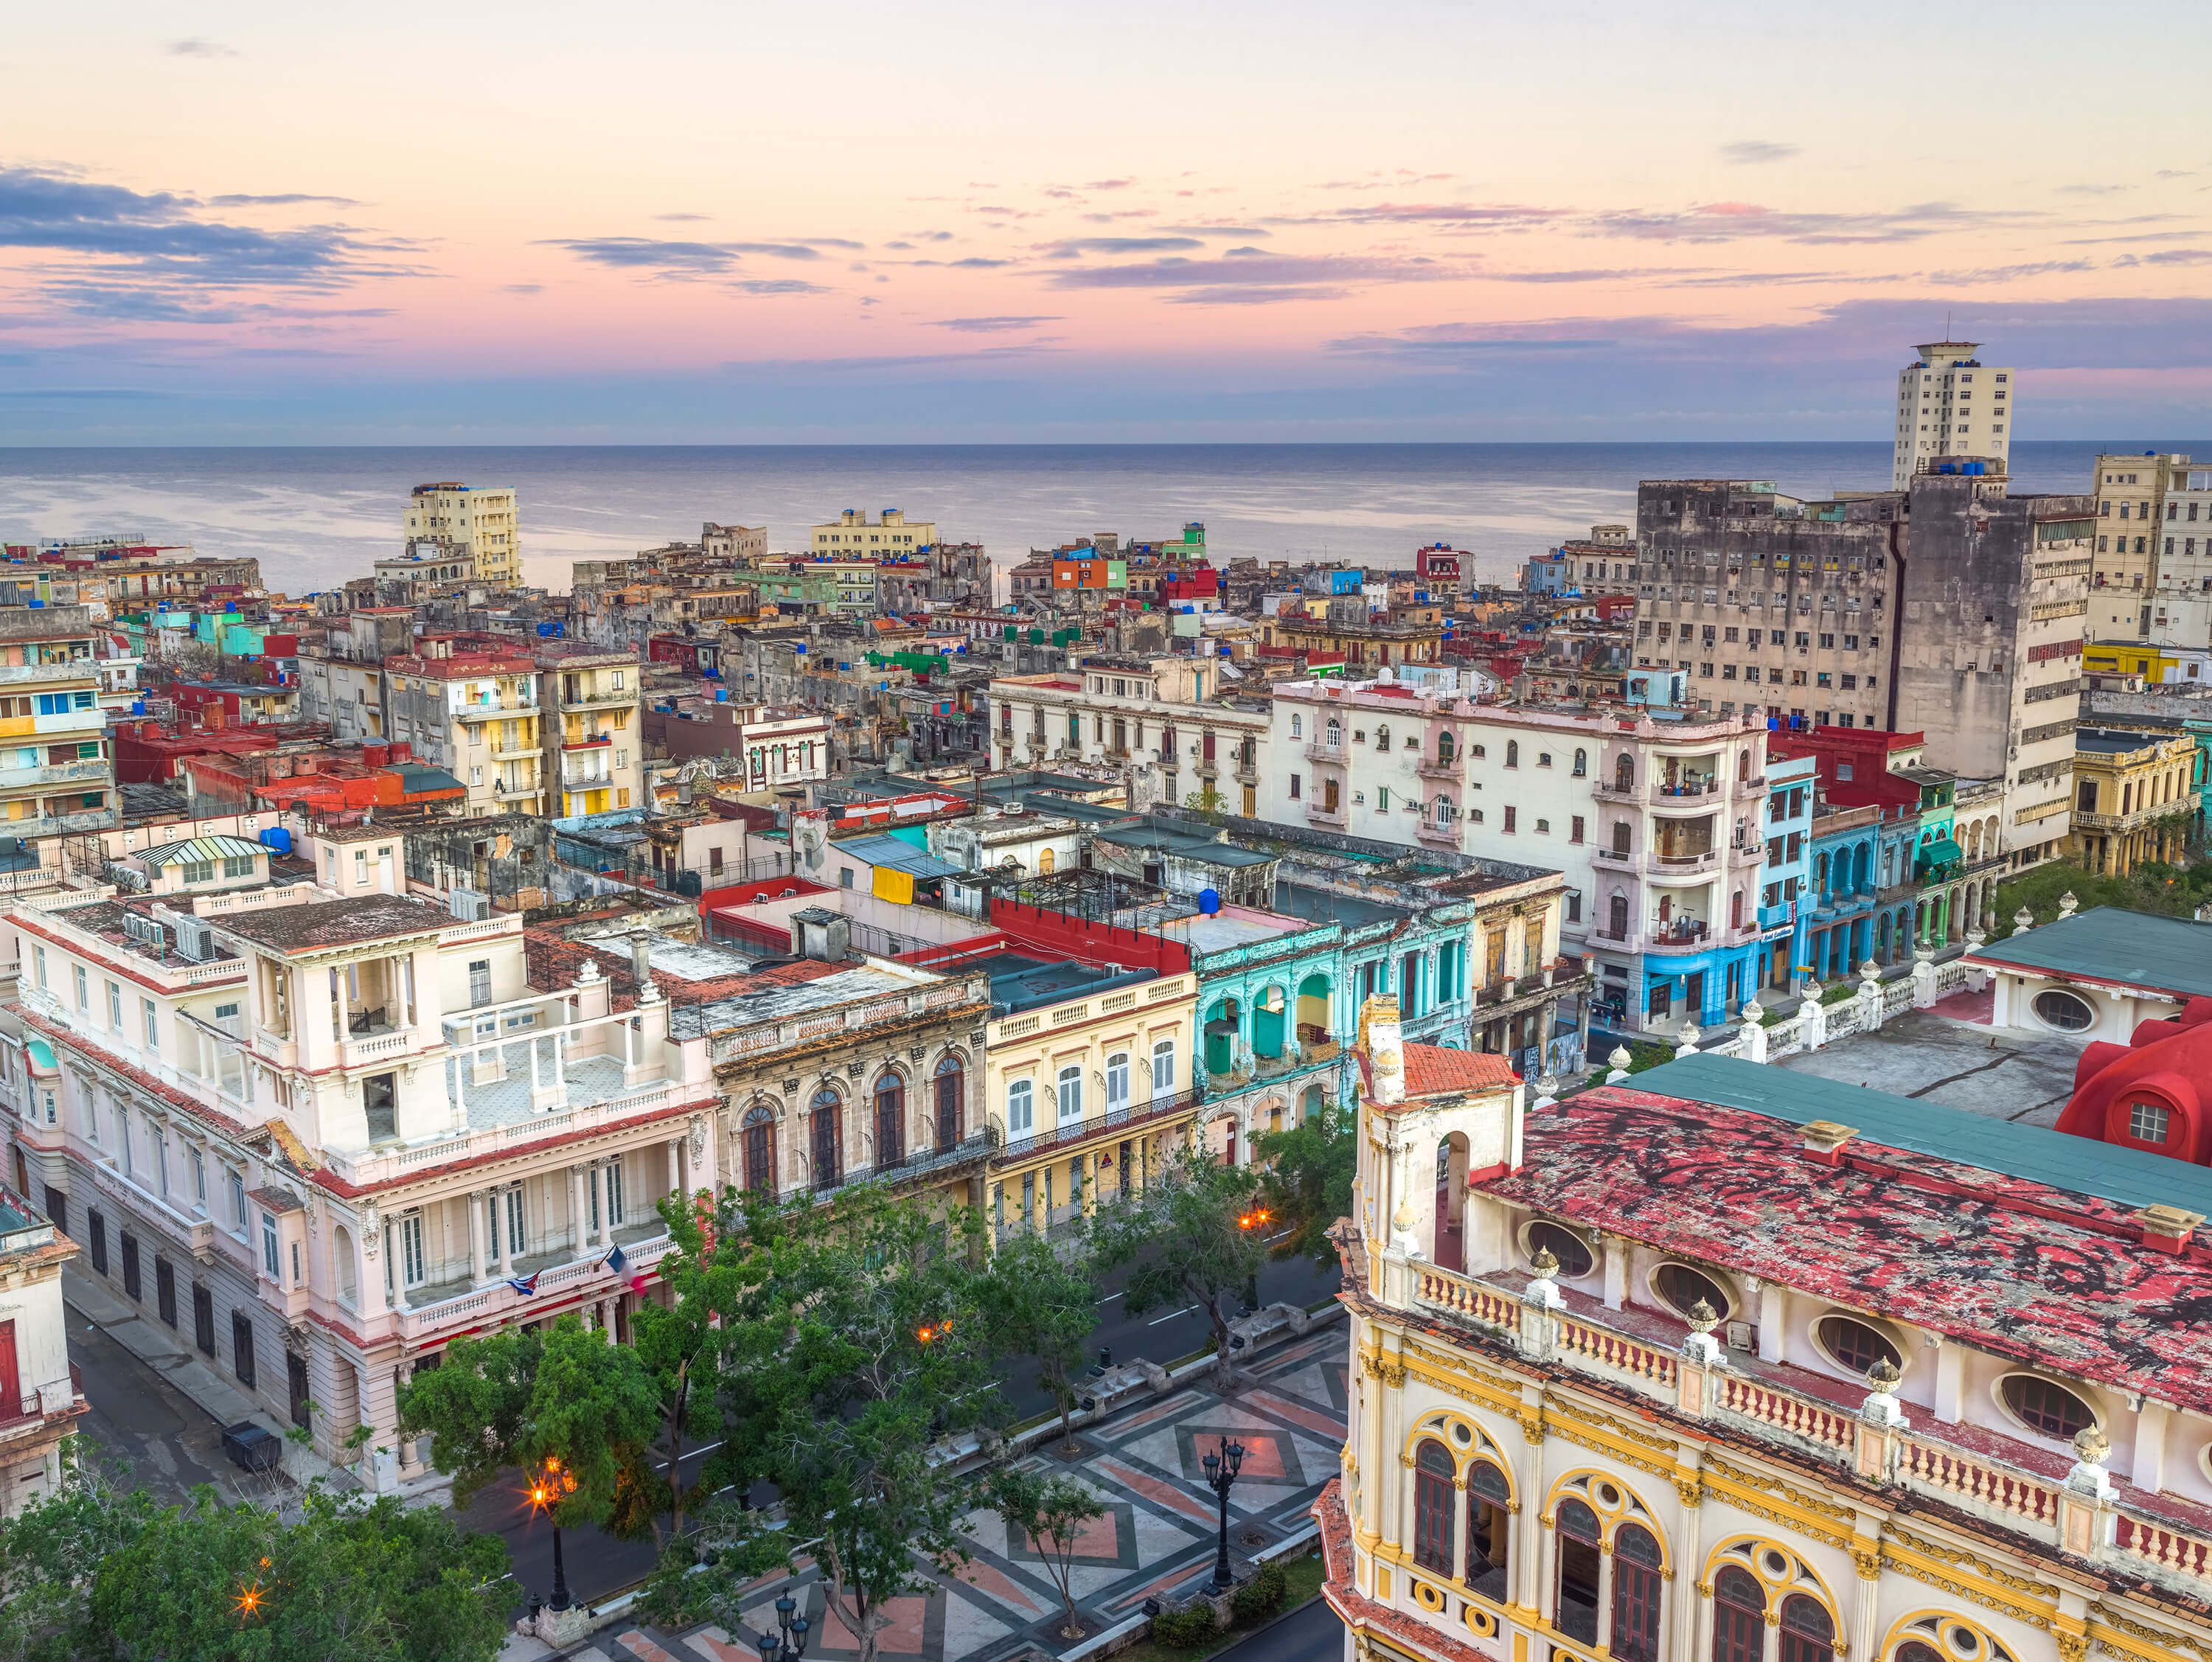  Papel pintado con La Habana desde arriba - Salón